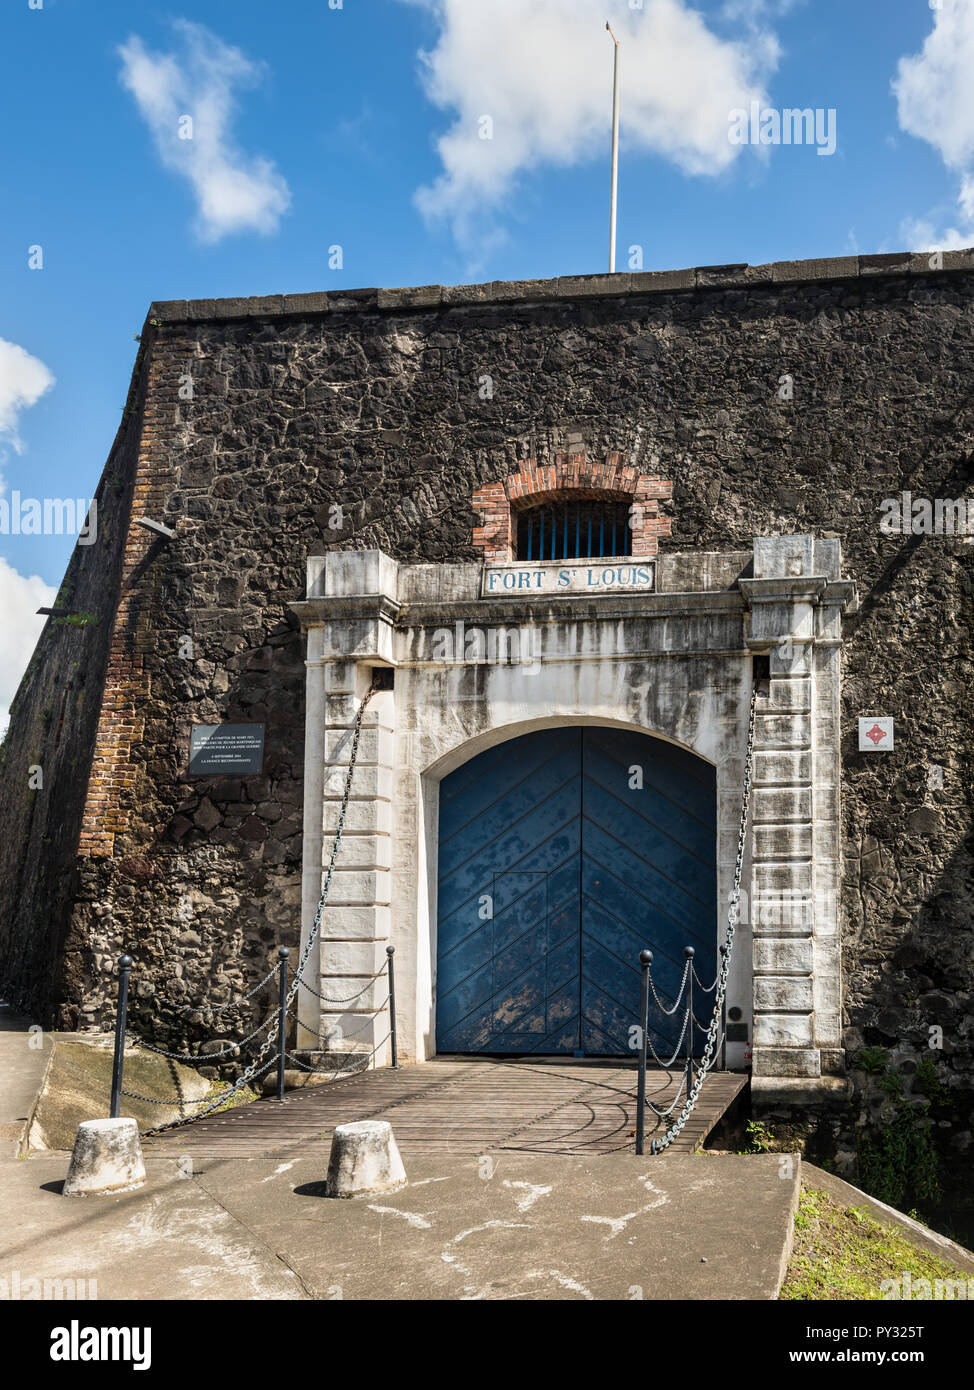 Fort-de-France, Martinique - 19 décembre 2016 : Porte de la Fort Saint Louis de Fort-de-France, France, ministère de l'outre-mer des Caraïbes Martinique, Banque D'Images